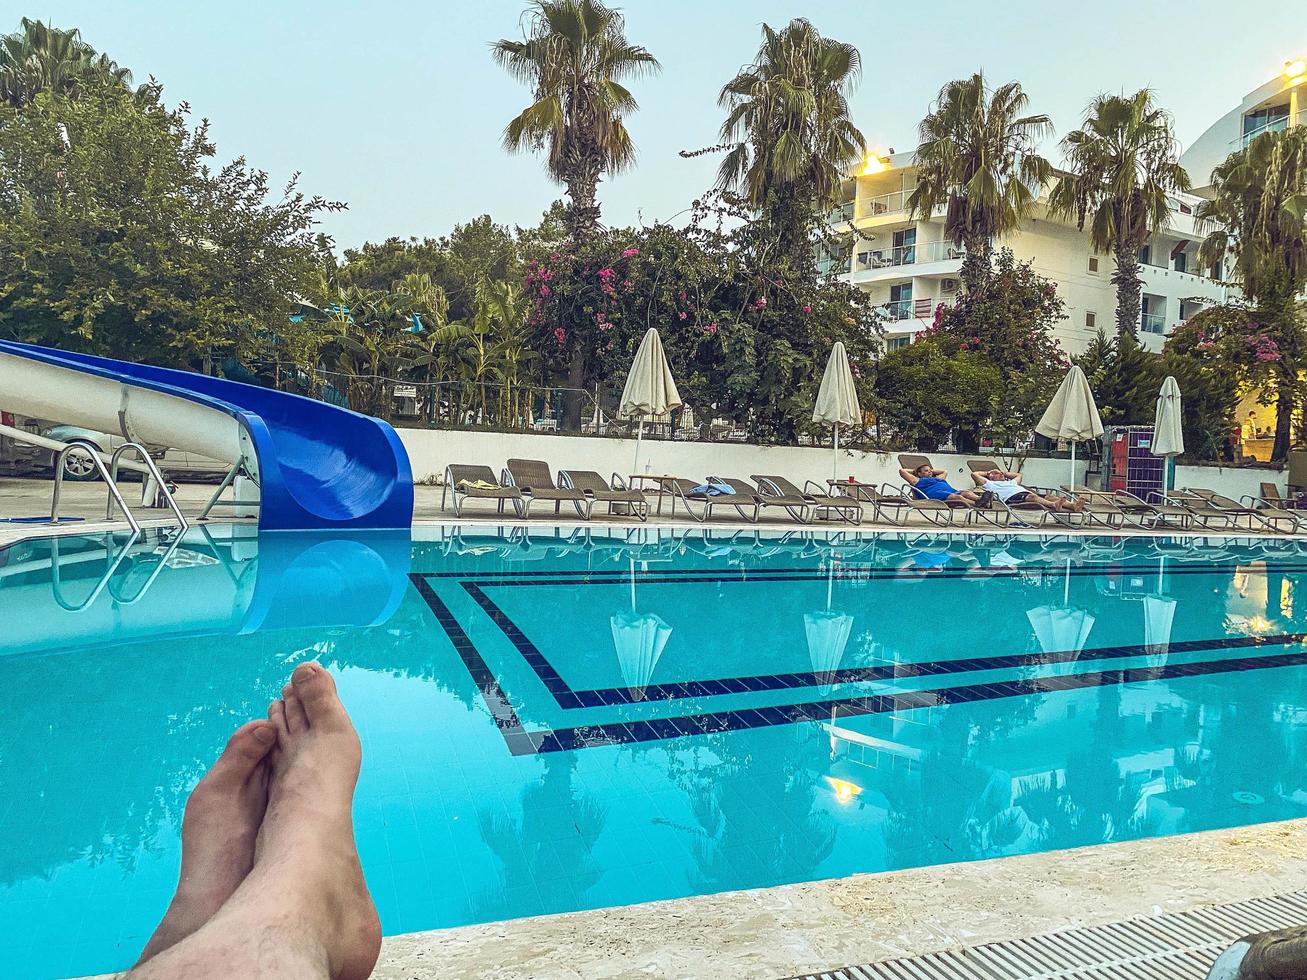 férias no mar na praia. turista tomando banho de sol em uma espreguiçadeira à beira da piscina. pernas masculinas brancas. relaxamento, férias em um país quente tropical foto